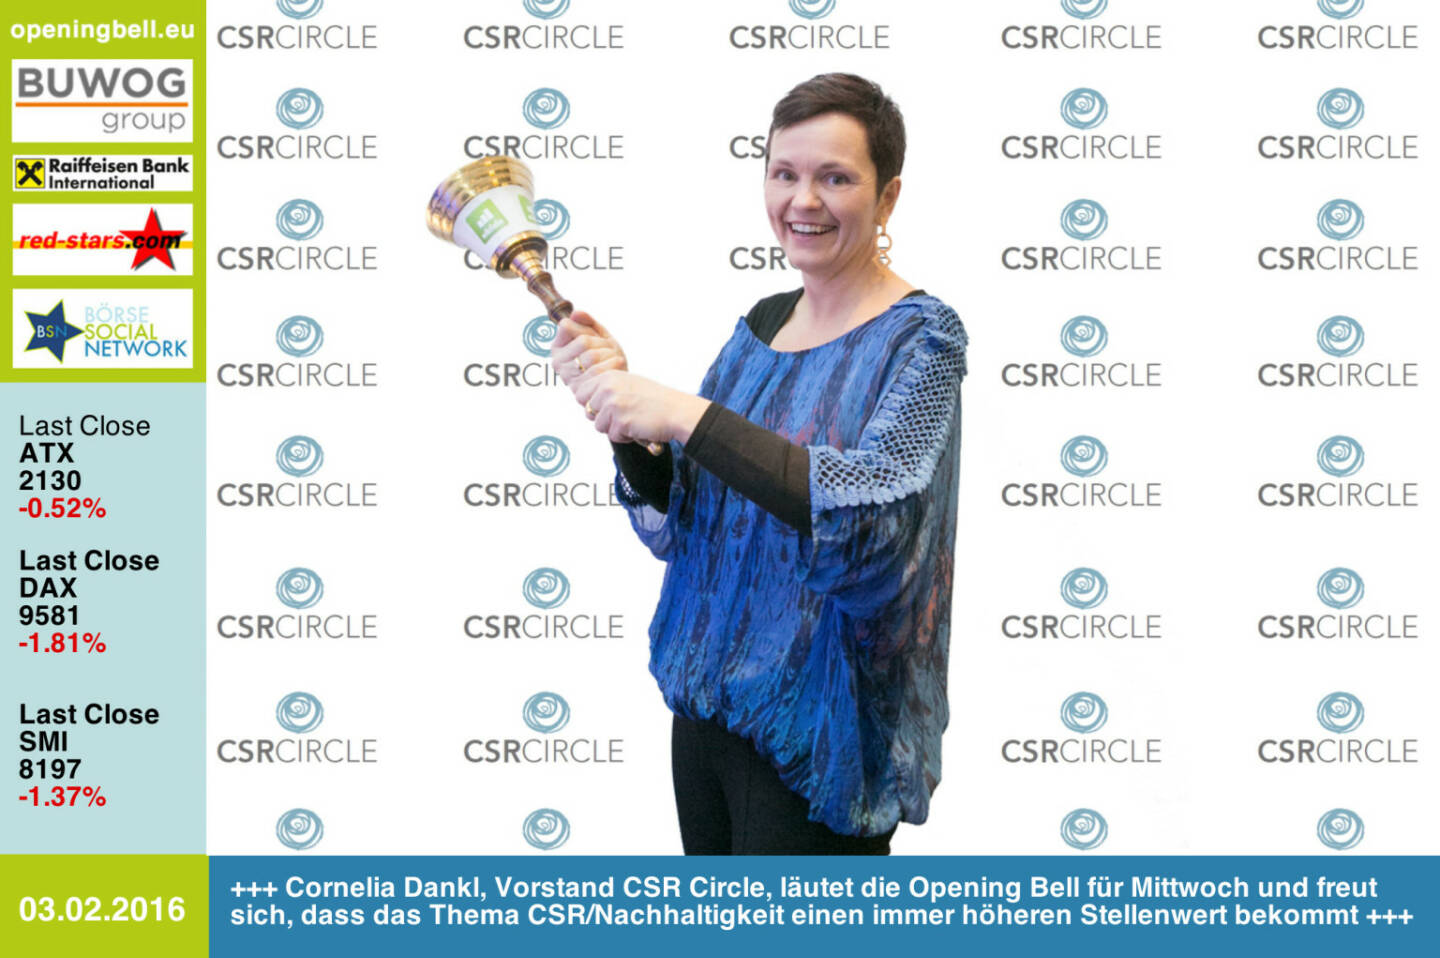 #openingbell am 3.2: Cornelia Dankl, Vorstand CSR Circle, läutet die Opening Bell für Mittwoch und freut sich, dass das Thema CSR/Nachhaltigkeit einen immer höheren Stellenwert bekommt http://www.csr-circle.at http://www.openingbell.eu